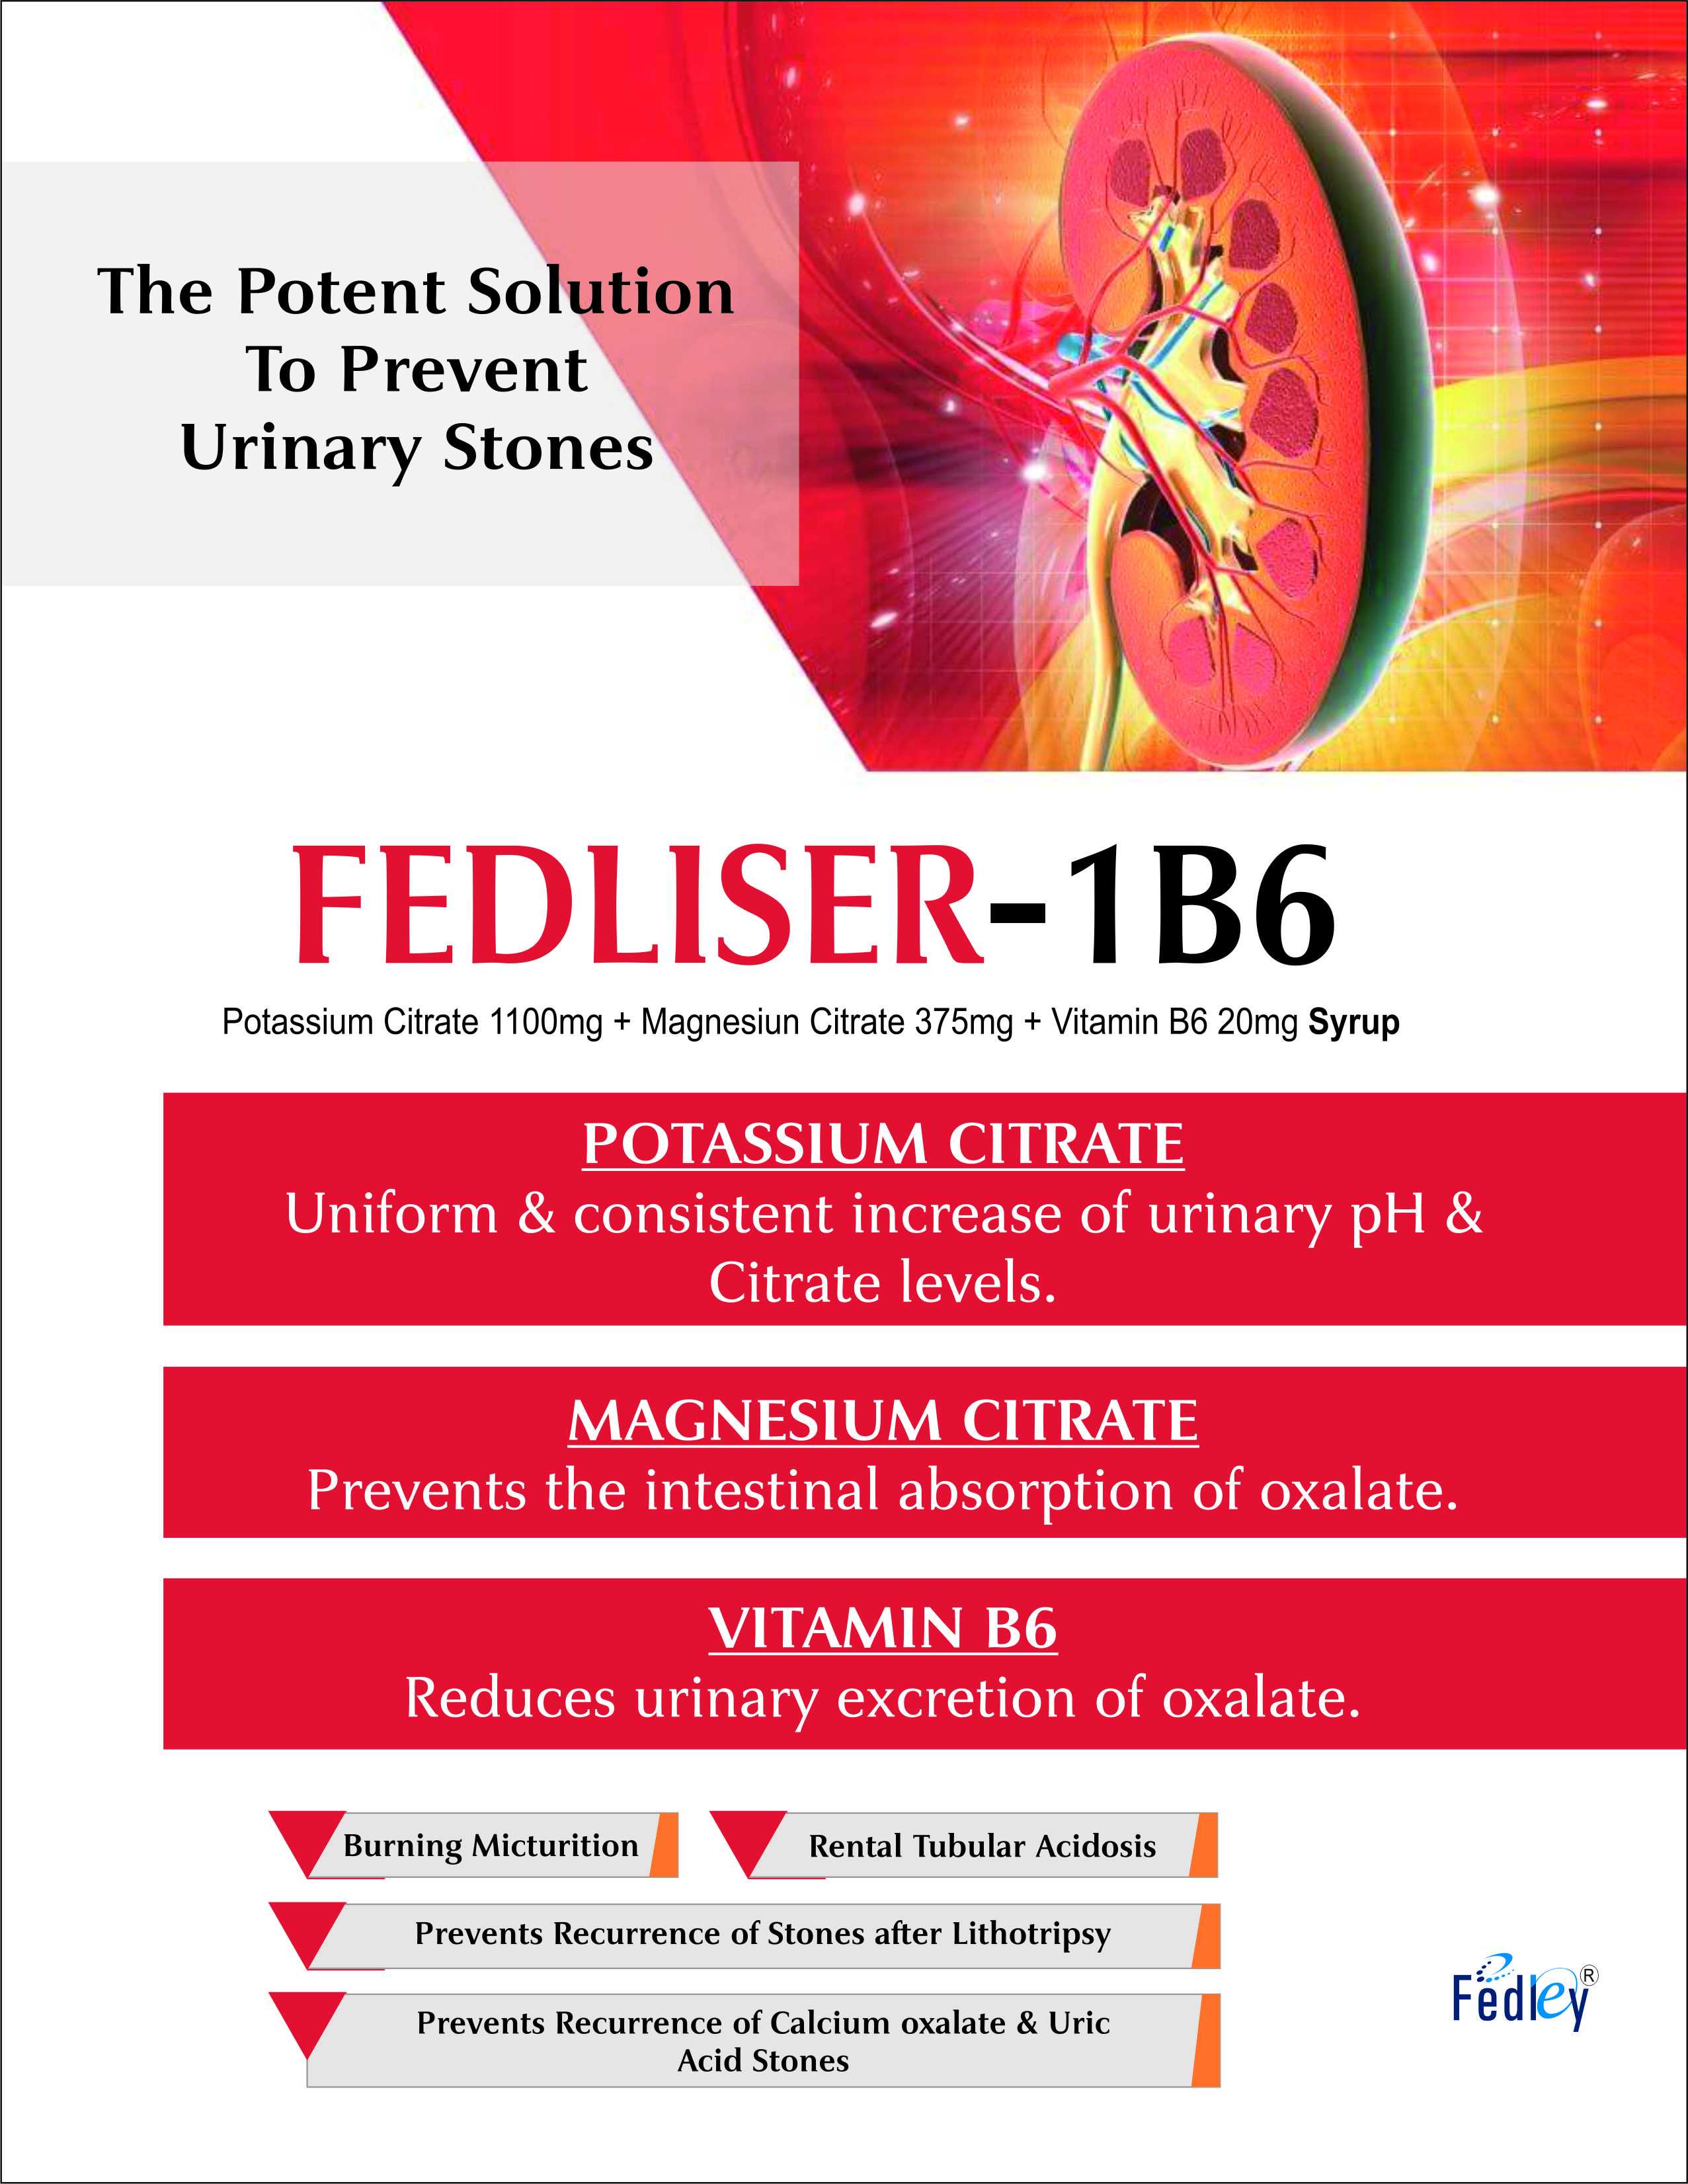 FEDLISER-1B6